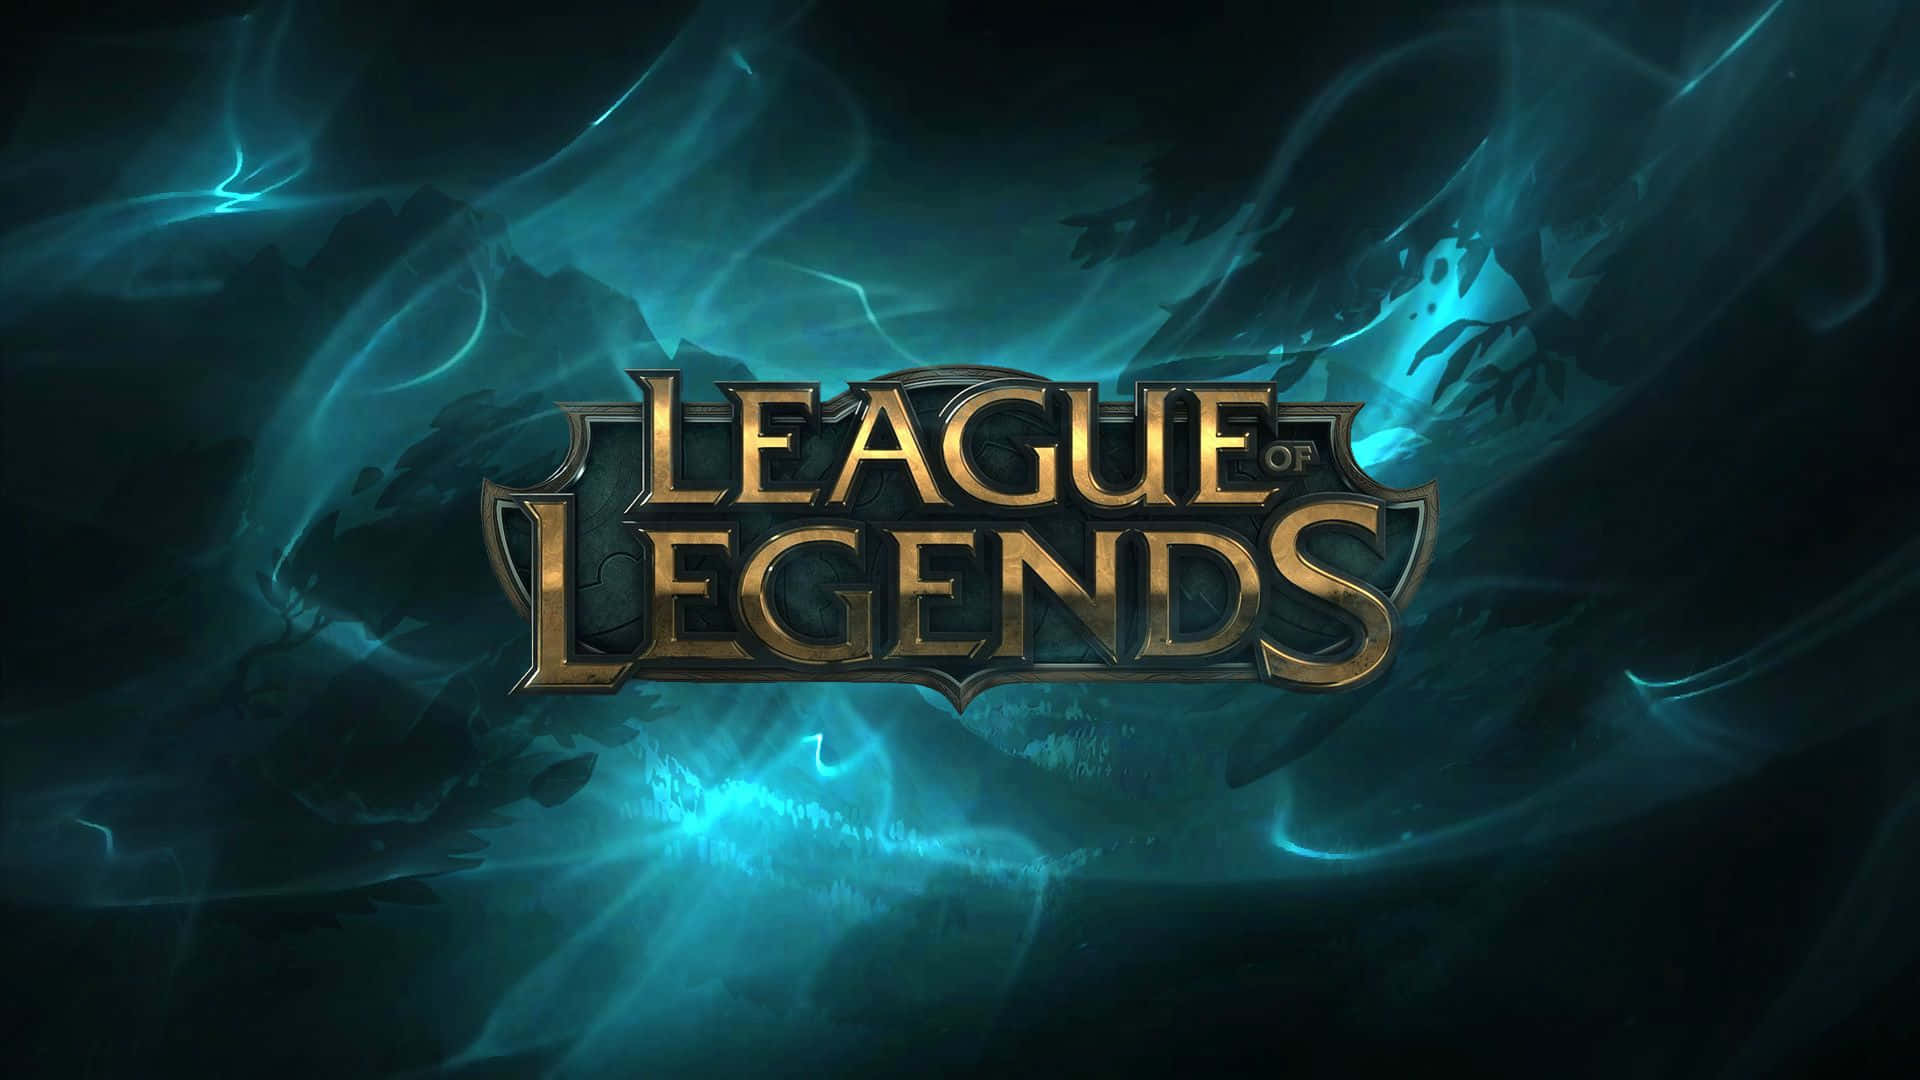 100+] 1920x1080 League Of Legends Backgrounds